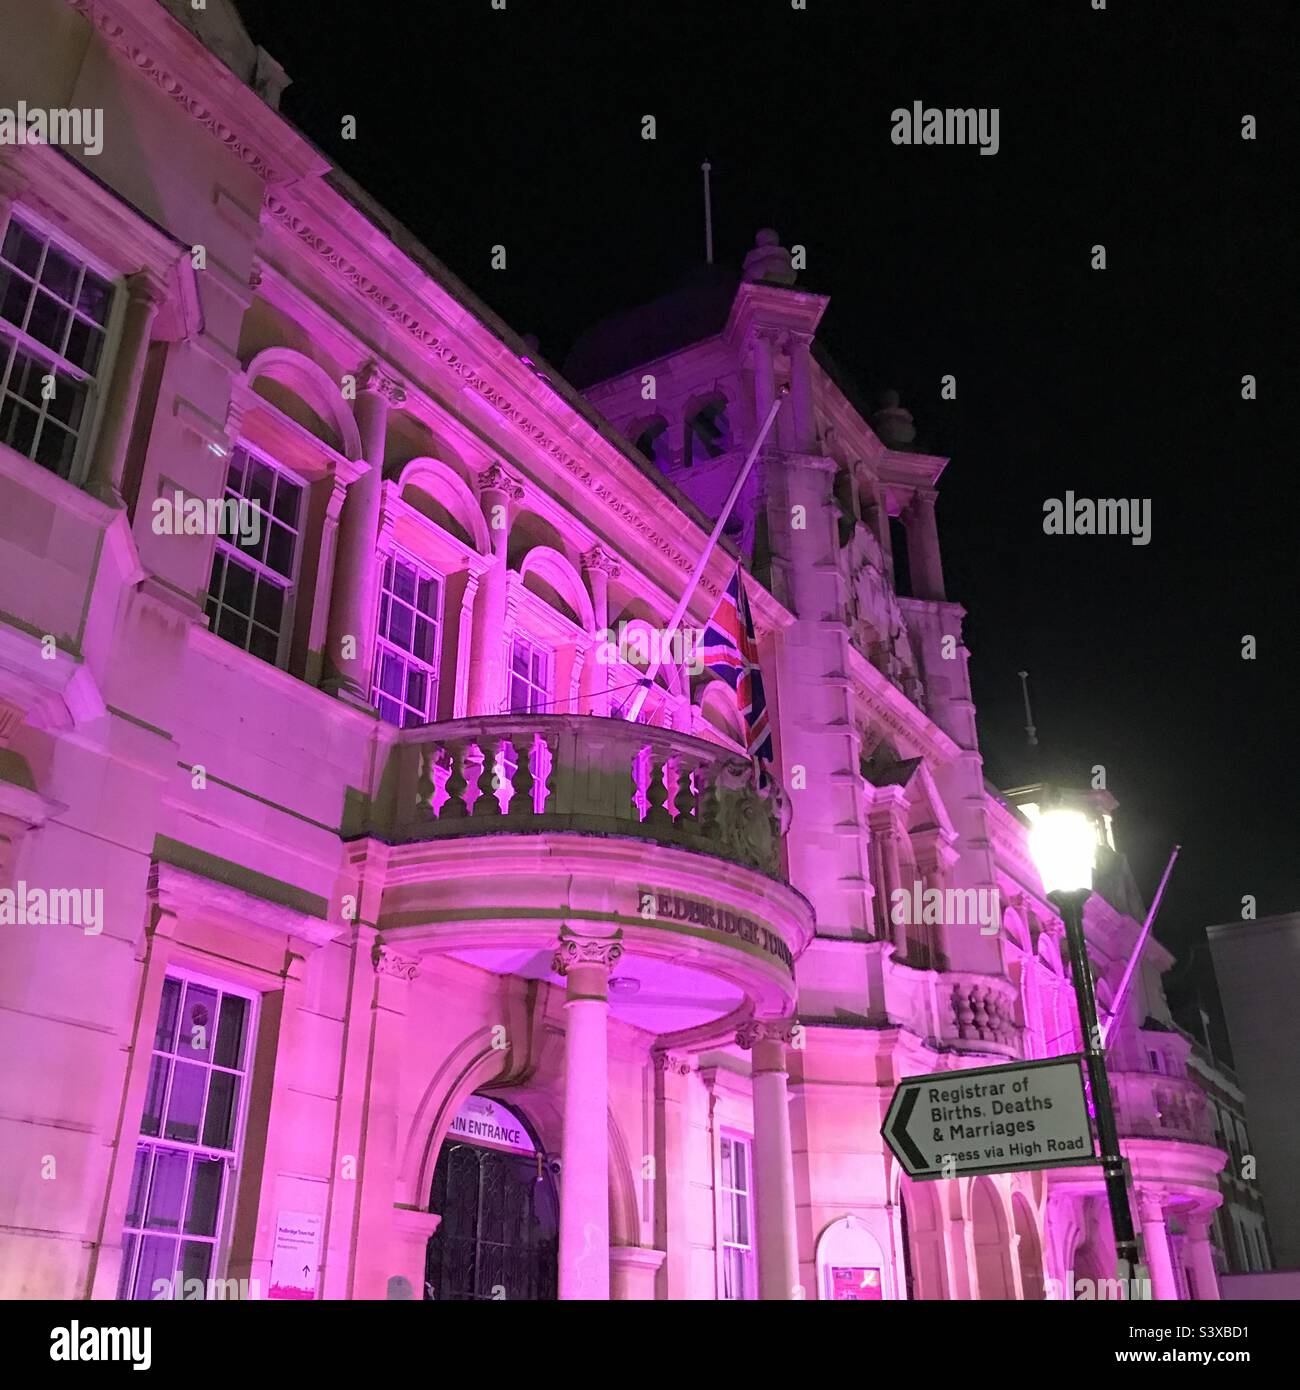 Flagge am halben Mast vor dem Rathaus von Redbridge am Vorabend der Beerdigung der Königin. Rathaus in lila zum Gedenken an Königin Elizabeth beleuchtet. Stockfoto